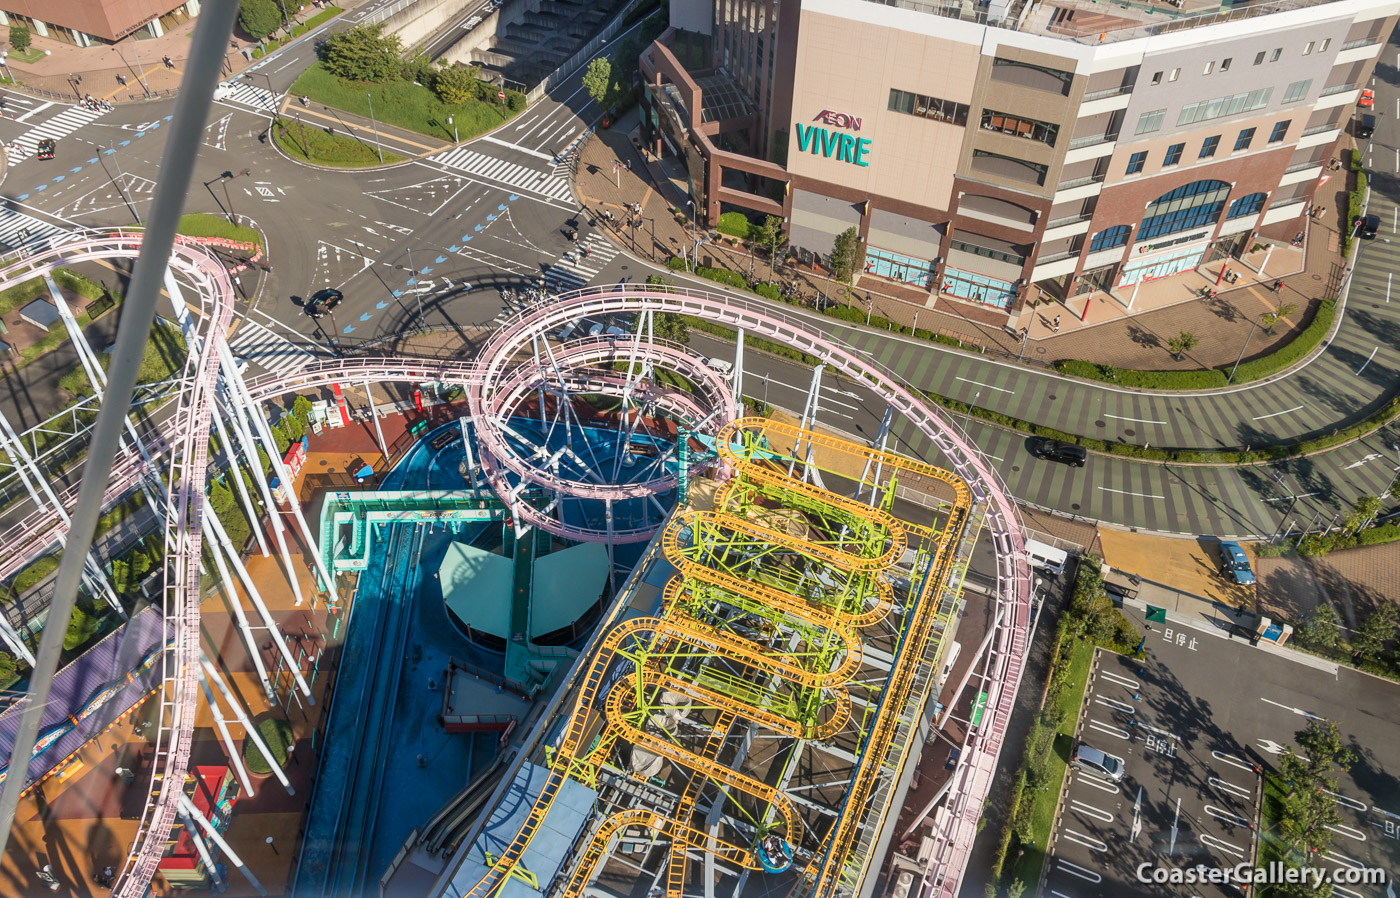 Spinning Coaster at Yokohama Cosmoworld in Japan